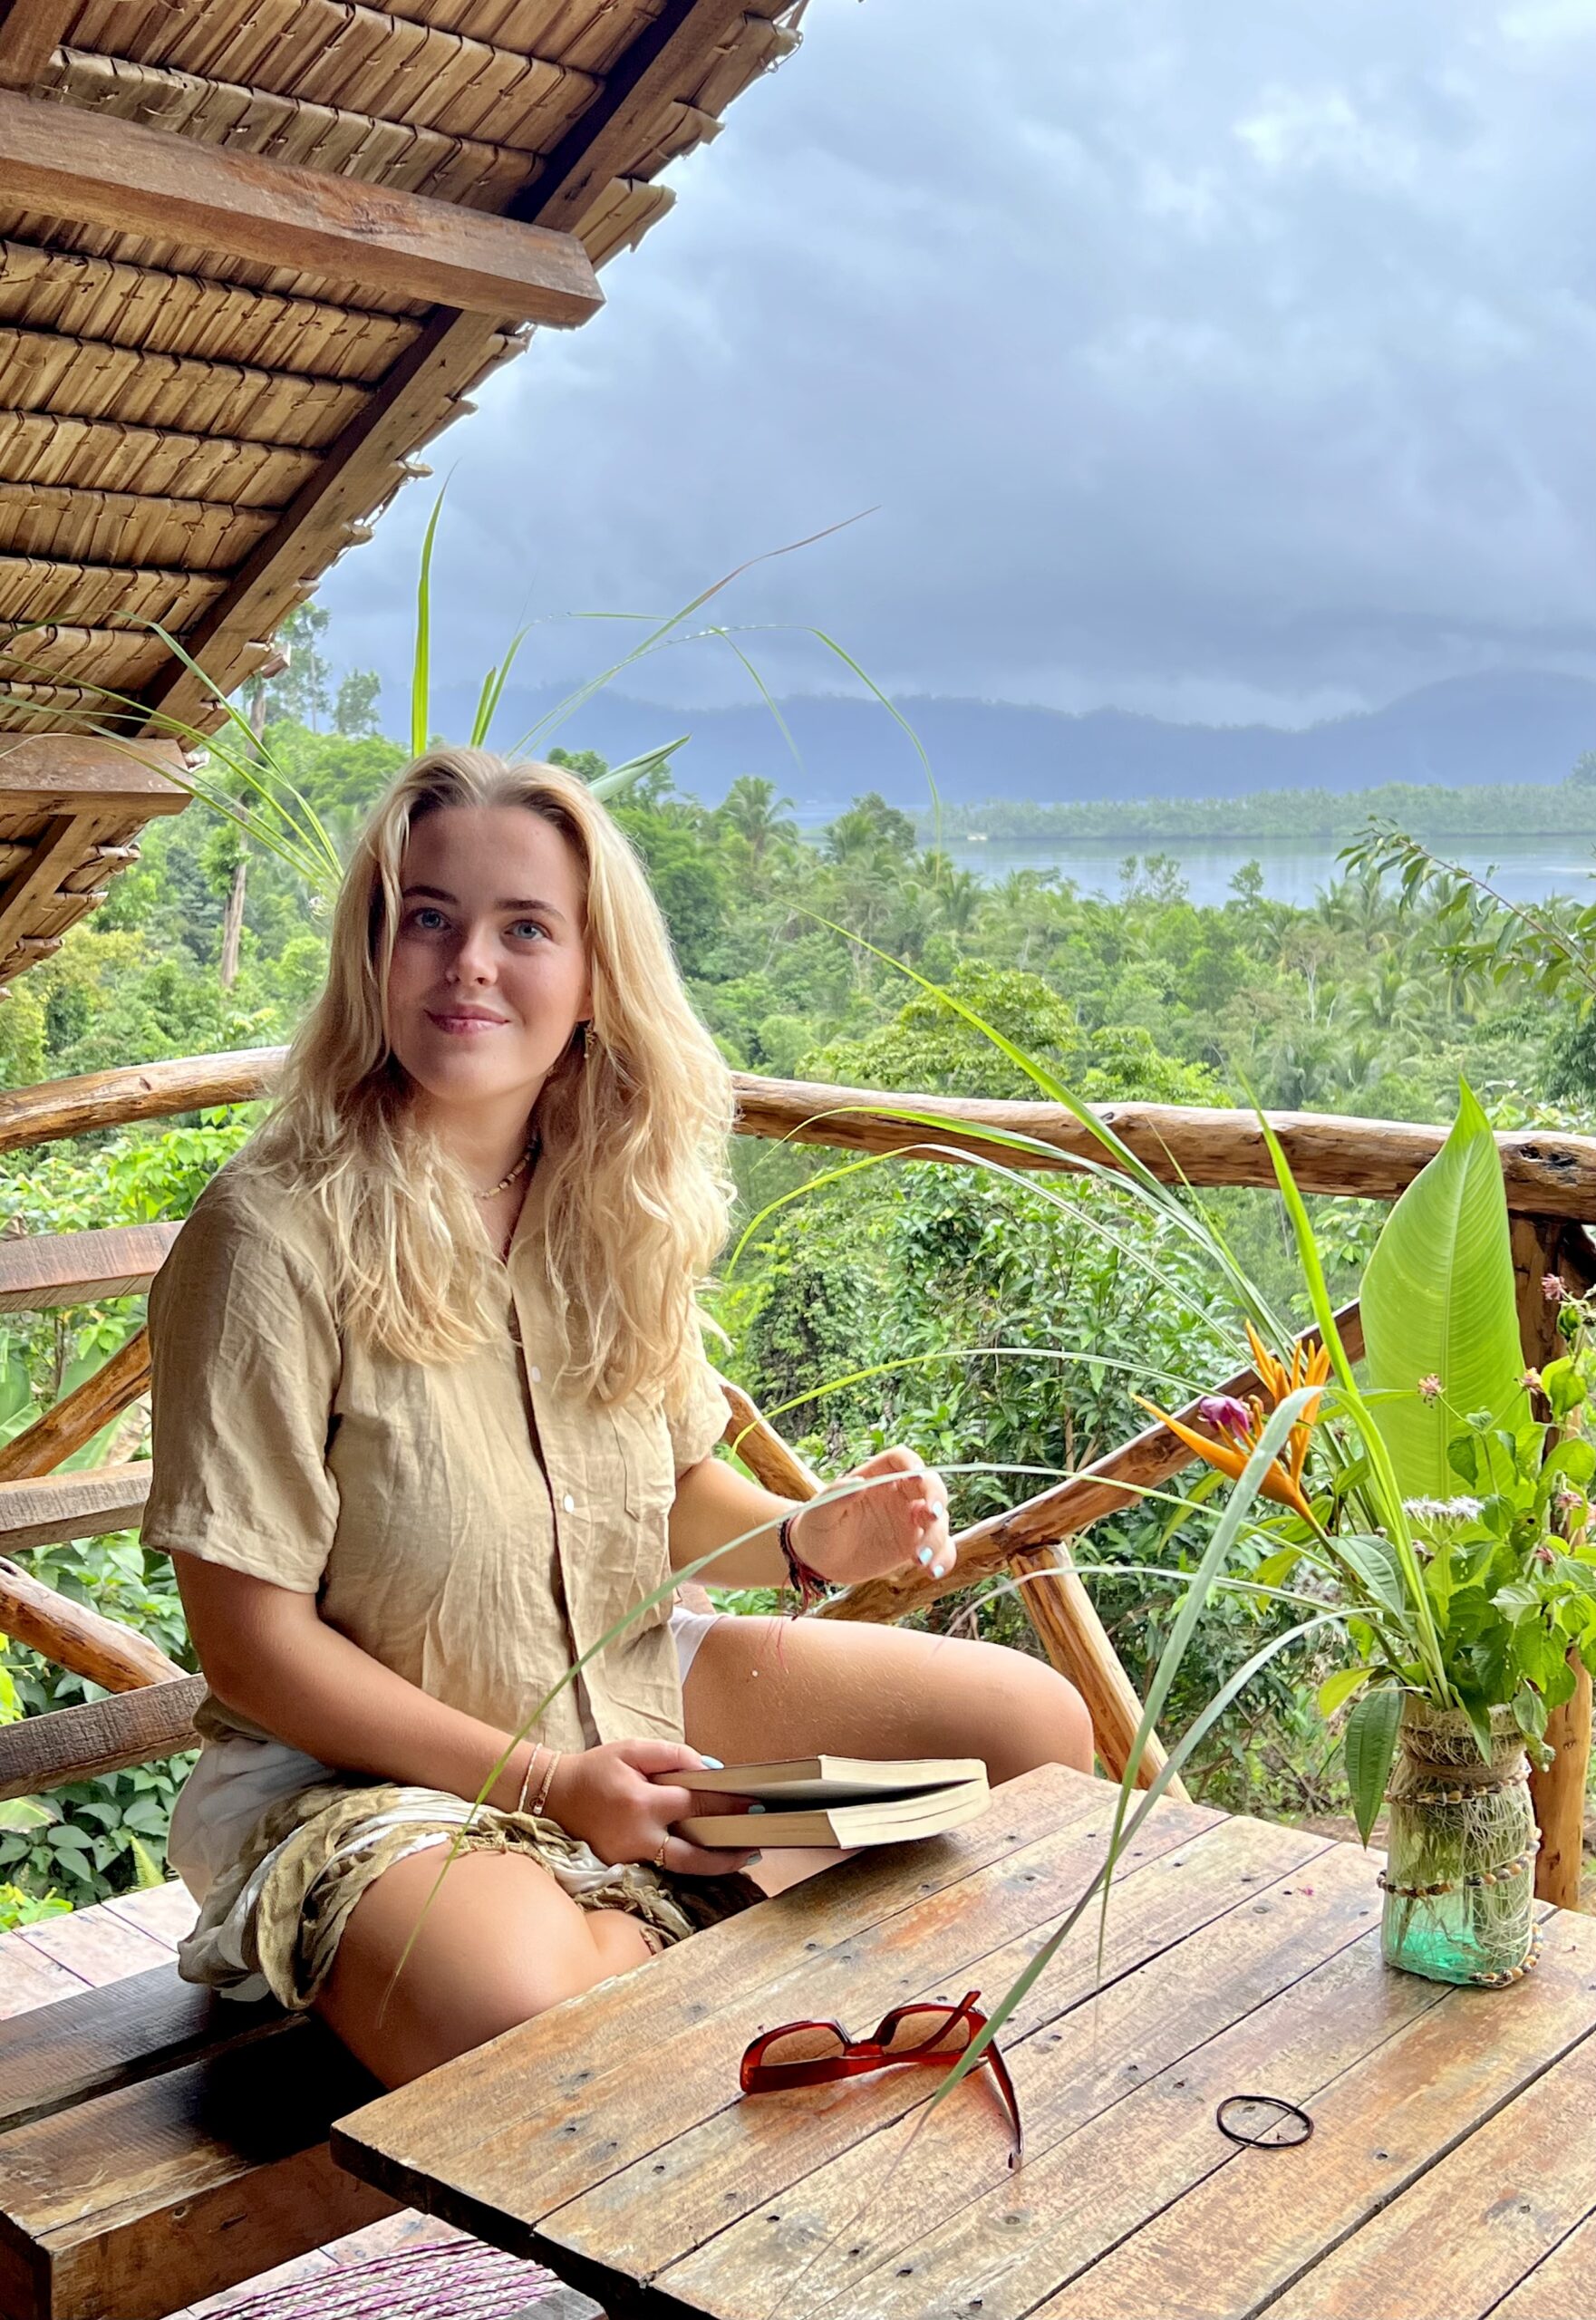 Mia Emile Persson guideskole rejseguide rejse influencer vlogger instagram tiktok 